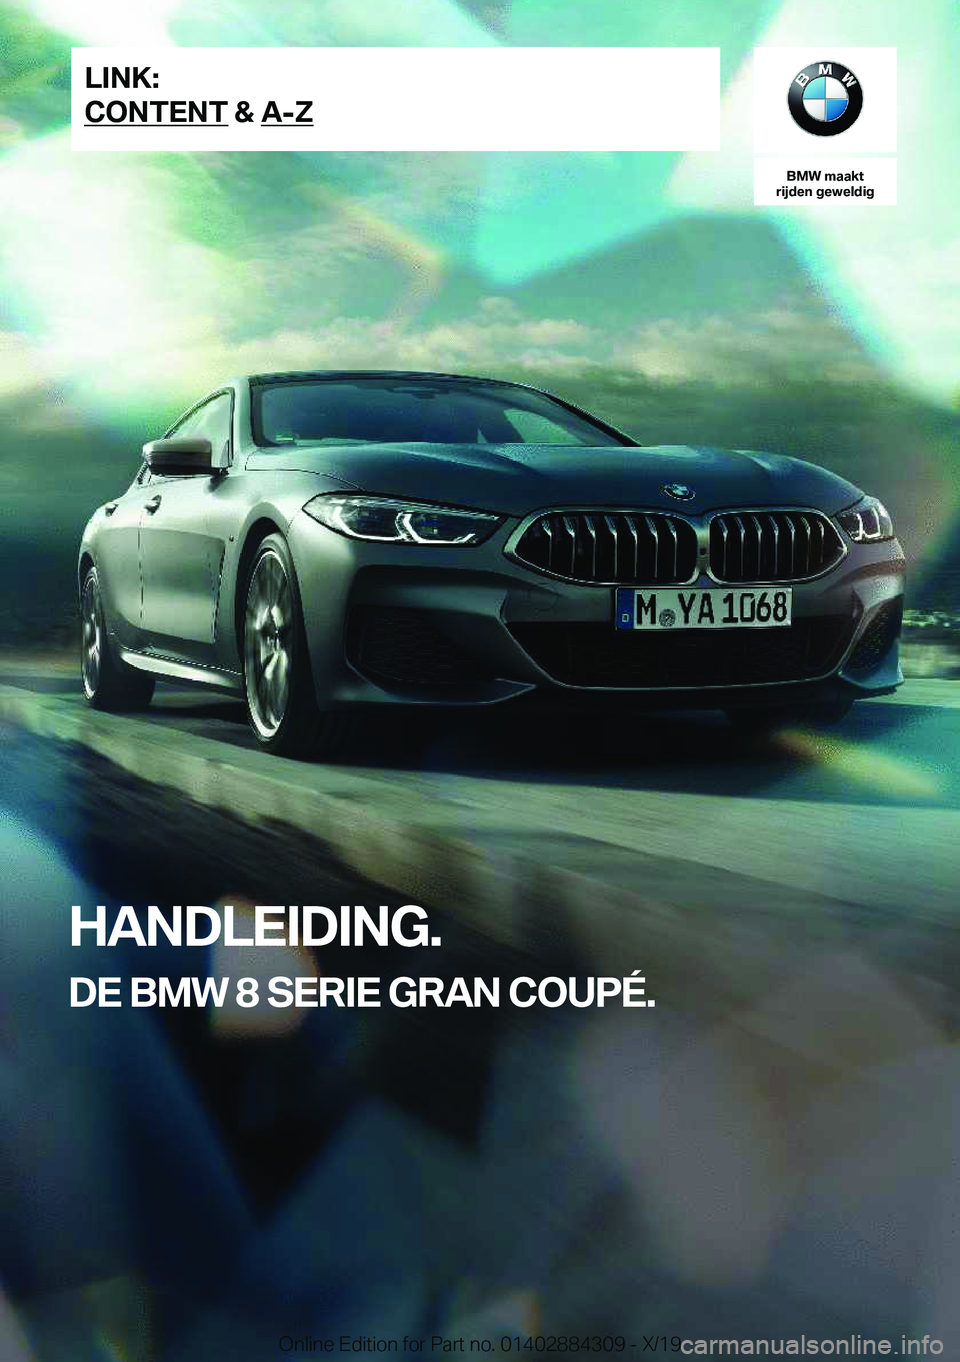 BMW 8 SERIES GRAN COUPE 2020  Instructieboekjes (in Dutch) �B�M�W��m�a�a�k�t
�r�i�j�d�e�n��g�e�w�e�l�d�i�g
�H�A�N�D�L�E�I�D�I�N�G�.
�D�E��B�M�W��8��S�E�R�I�E��G�R�A�N��C�O�U�P�